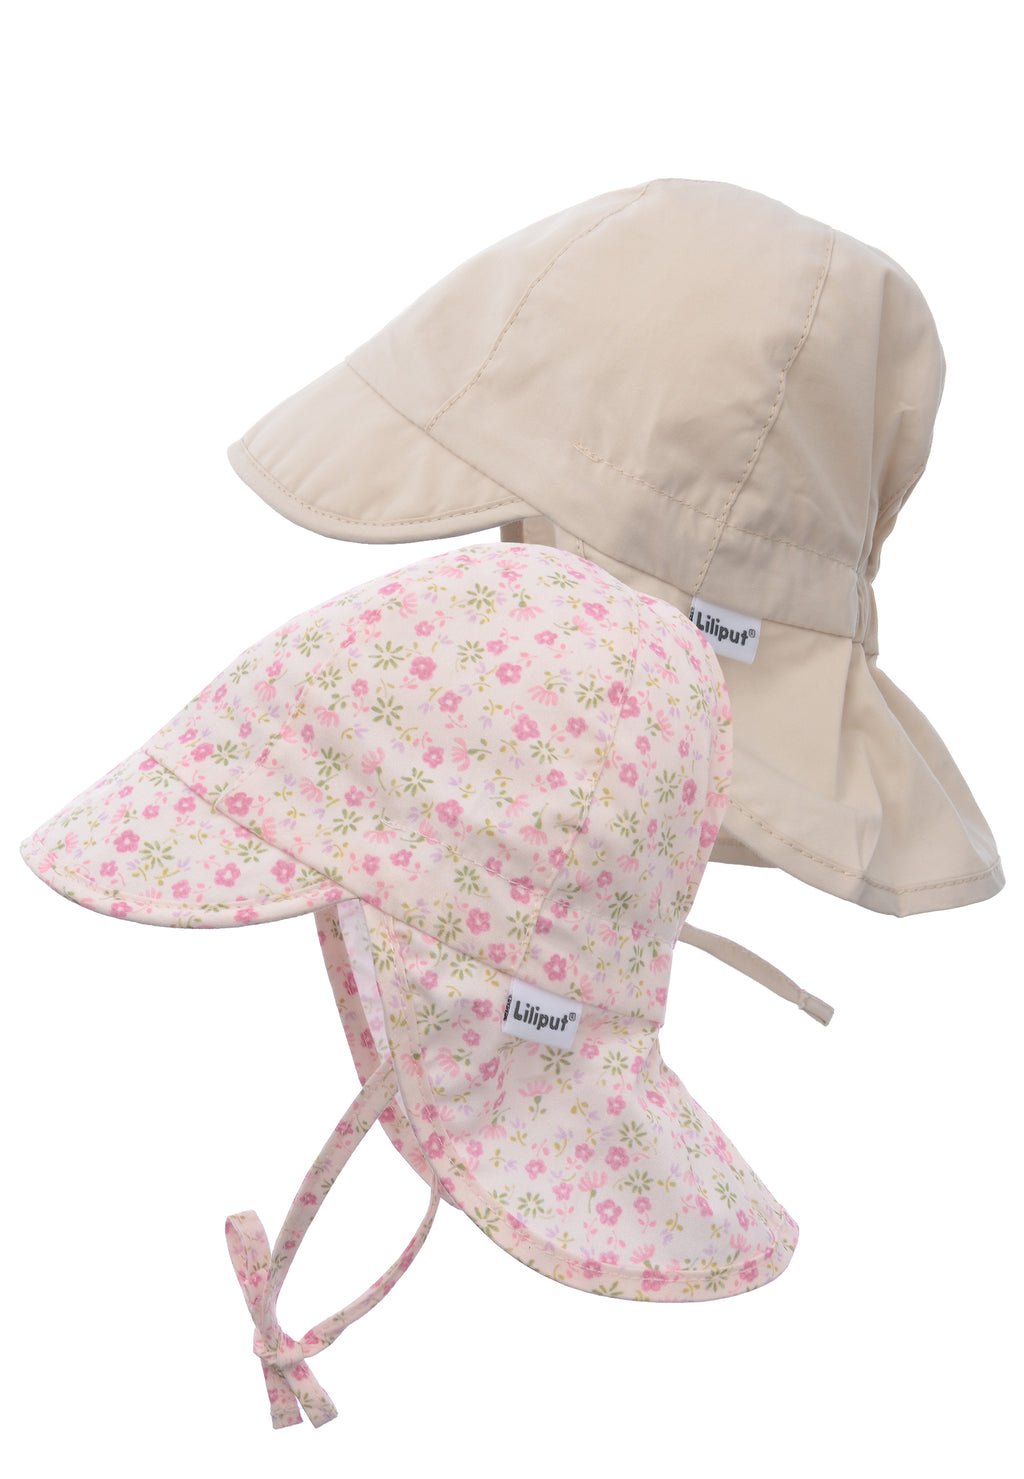 Doppelpack Schirmmützen mit Nackenschutz und Bindeband in beige und einmal in rosa mit Blümchenprint.